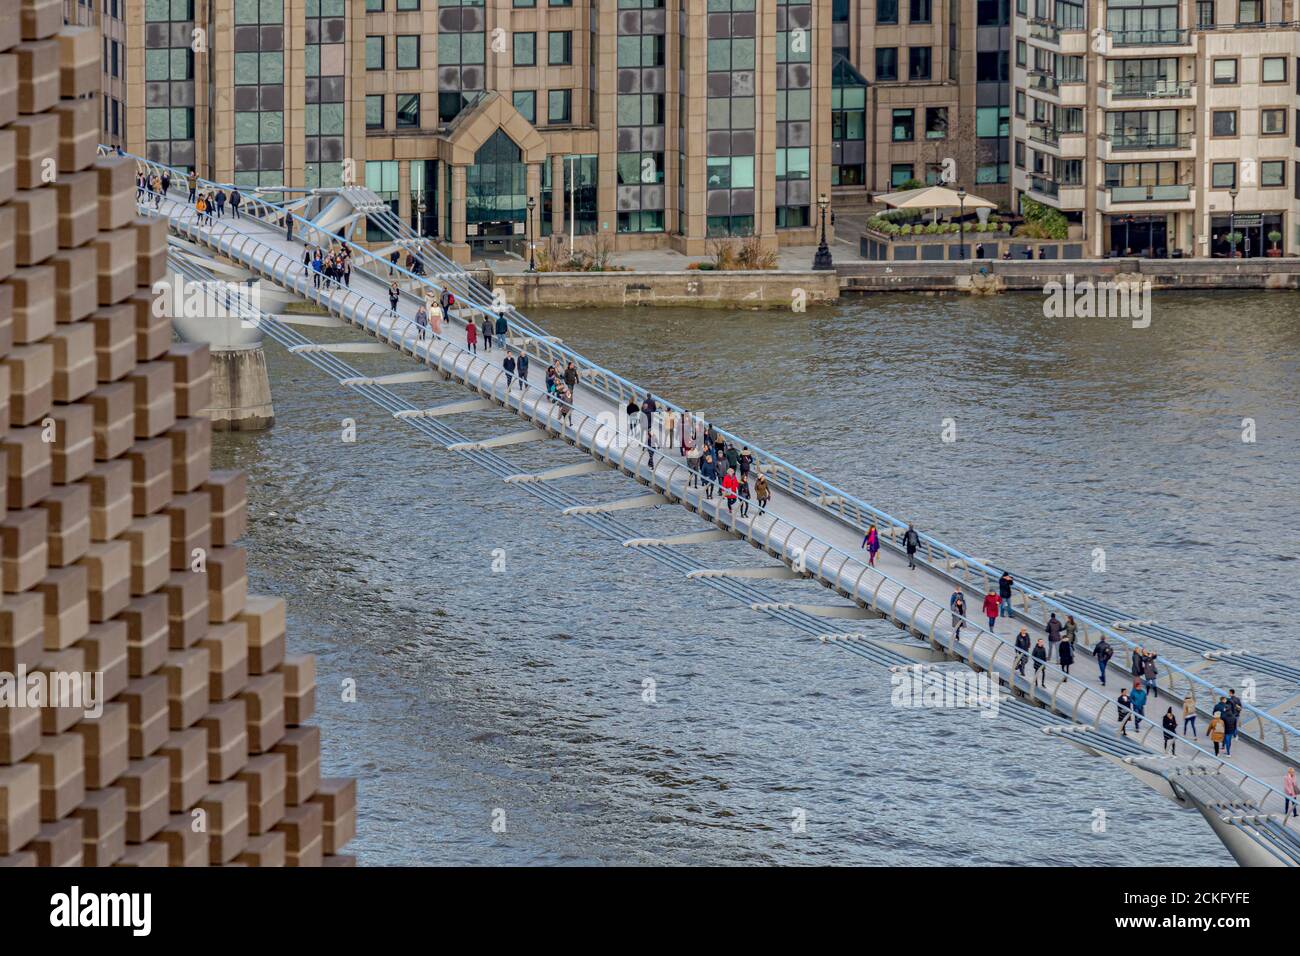 Menschen, die die Millennium Footbridge überqueren, eine Stahlhängebrücke über die Themse in London, die Bankside mit der City of London verbindet Stockfoto